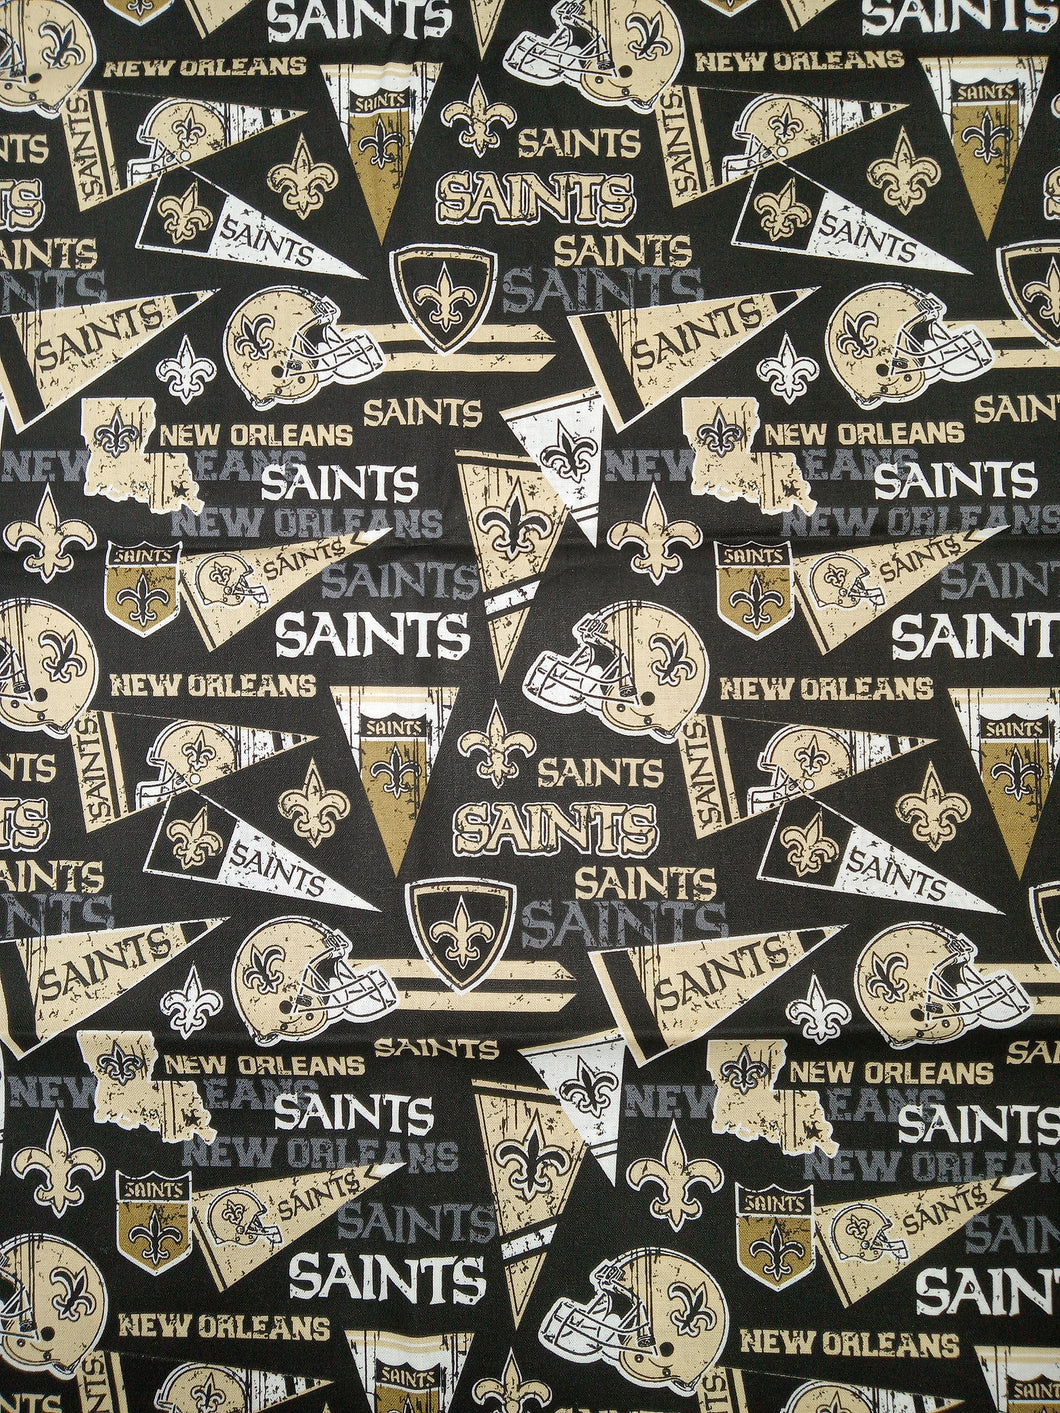 Saints Flag Cotton Fabric